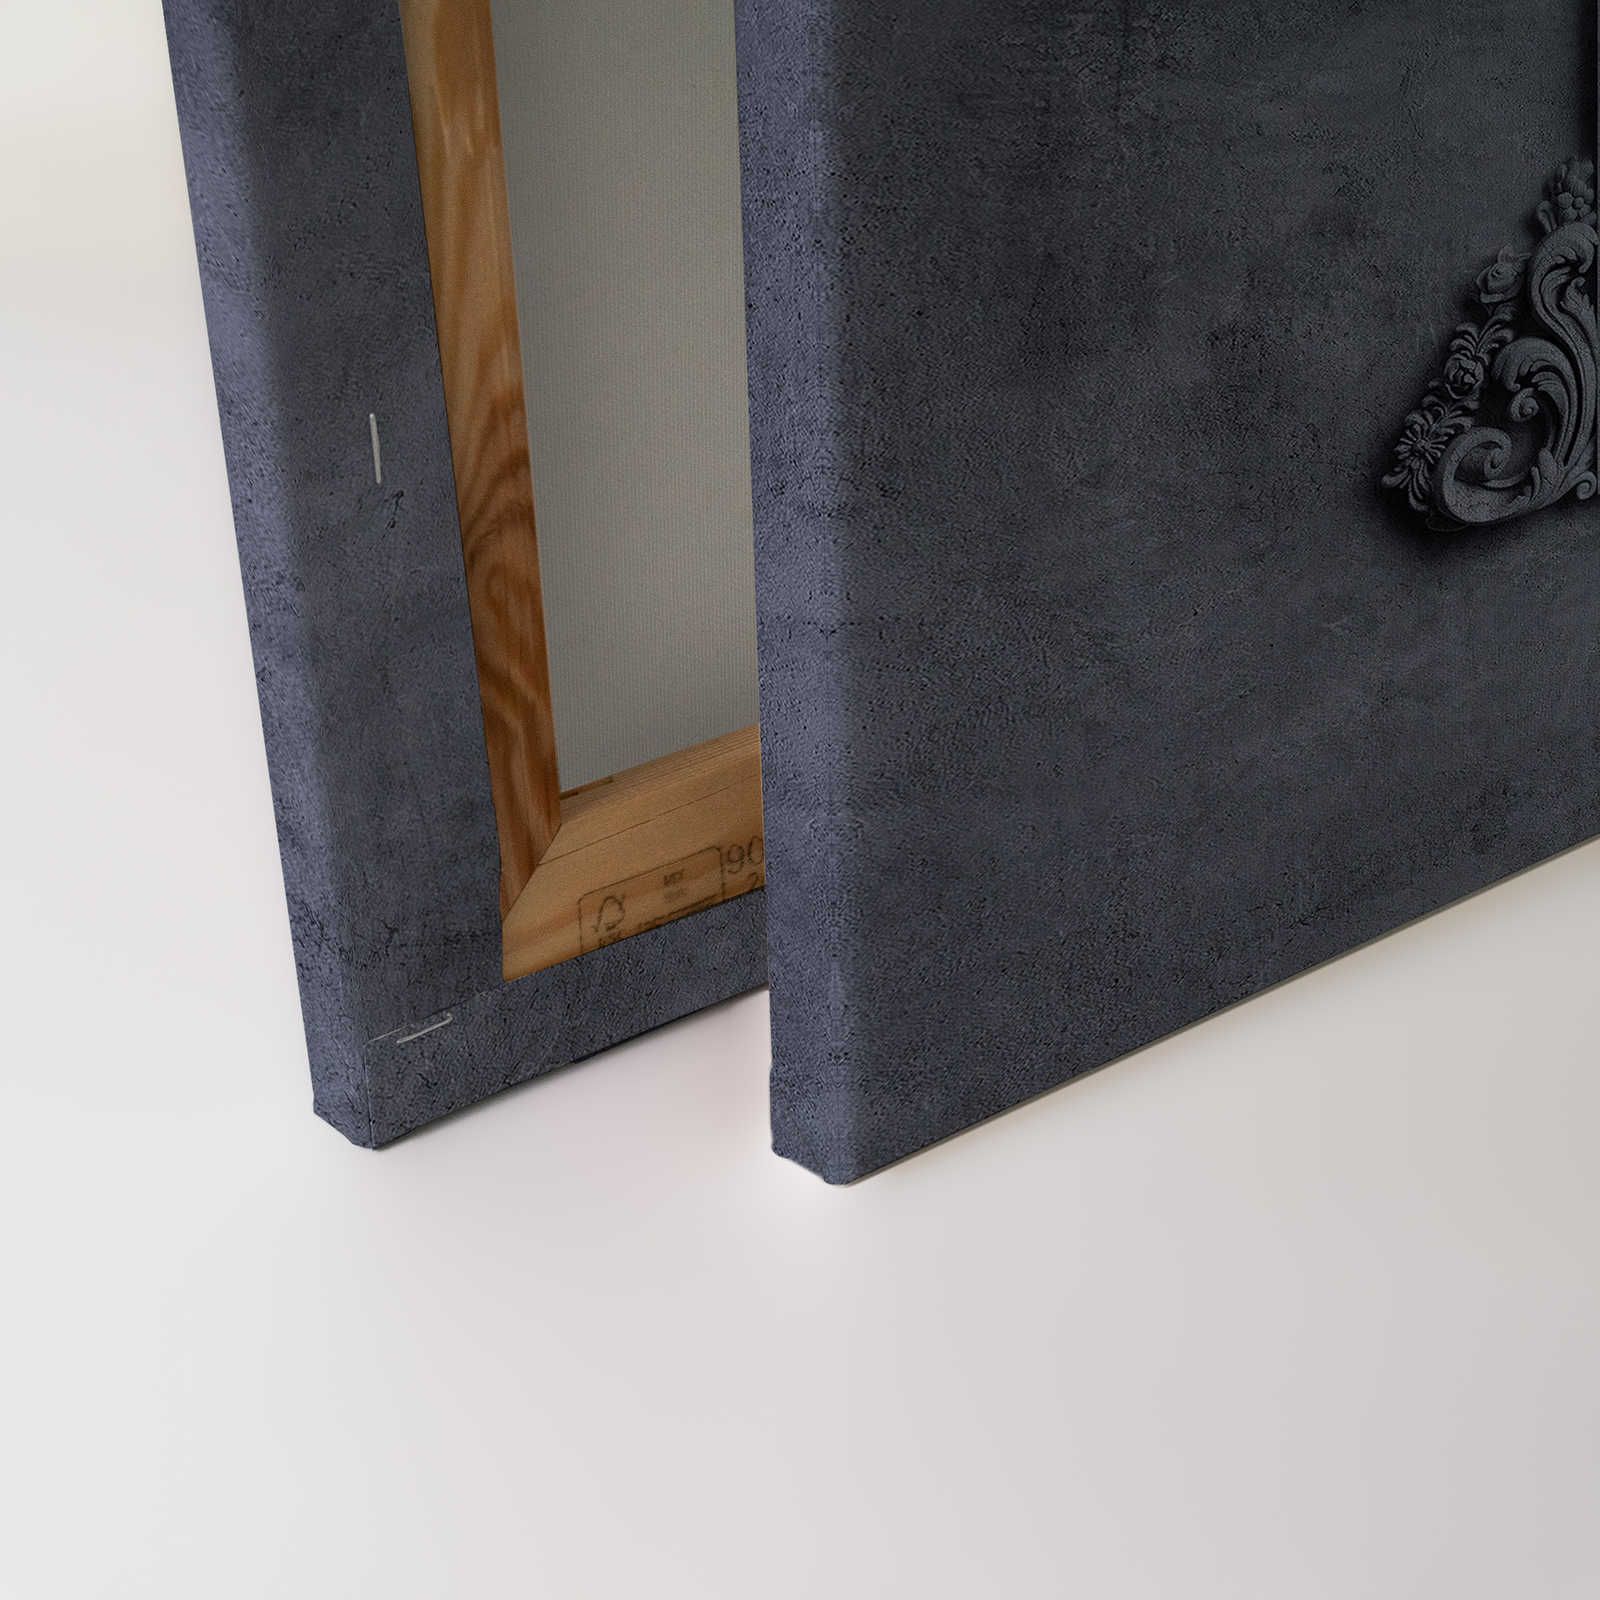             Lyon 3 - Quadro su tela 3D con cornice in stucco e intonaco blu - 0,90 m x 0,60 m
        